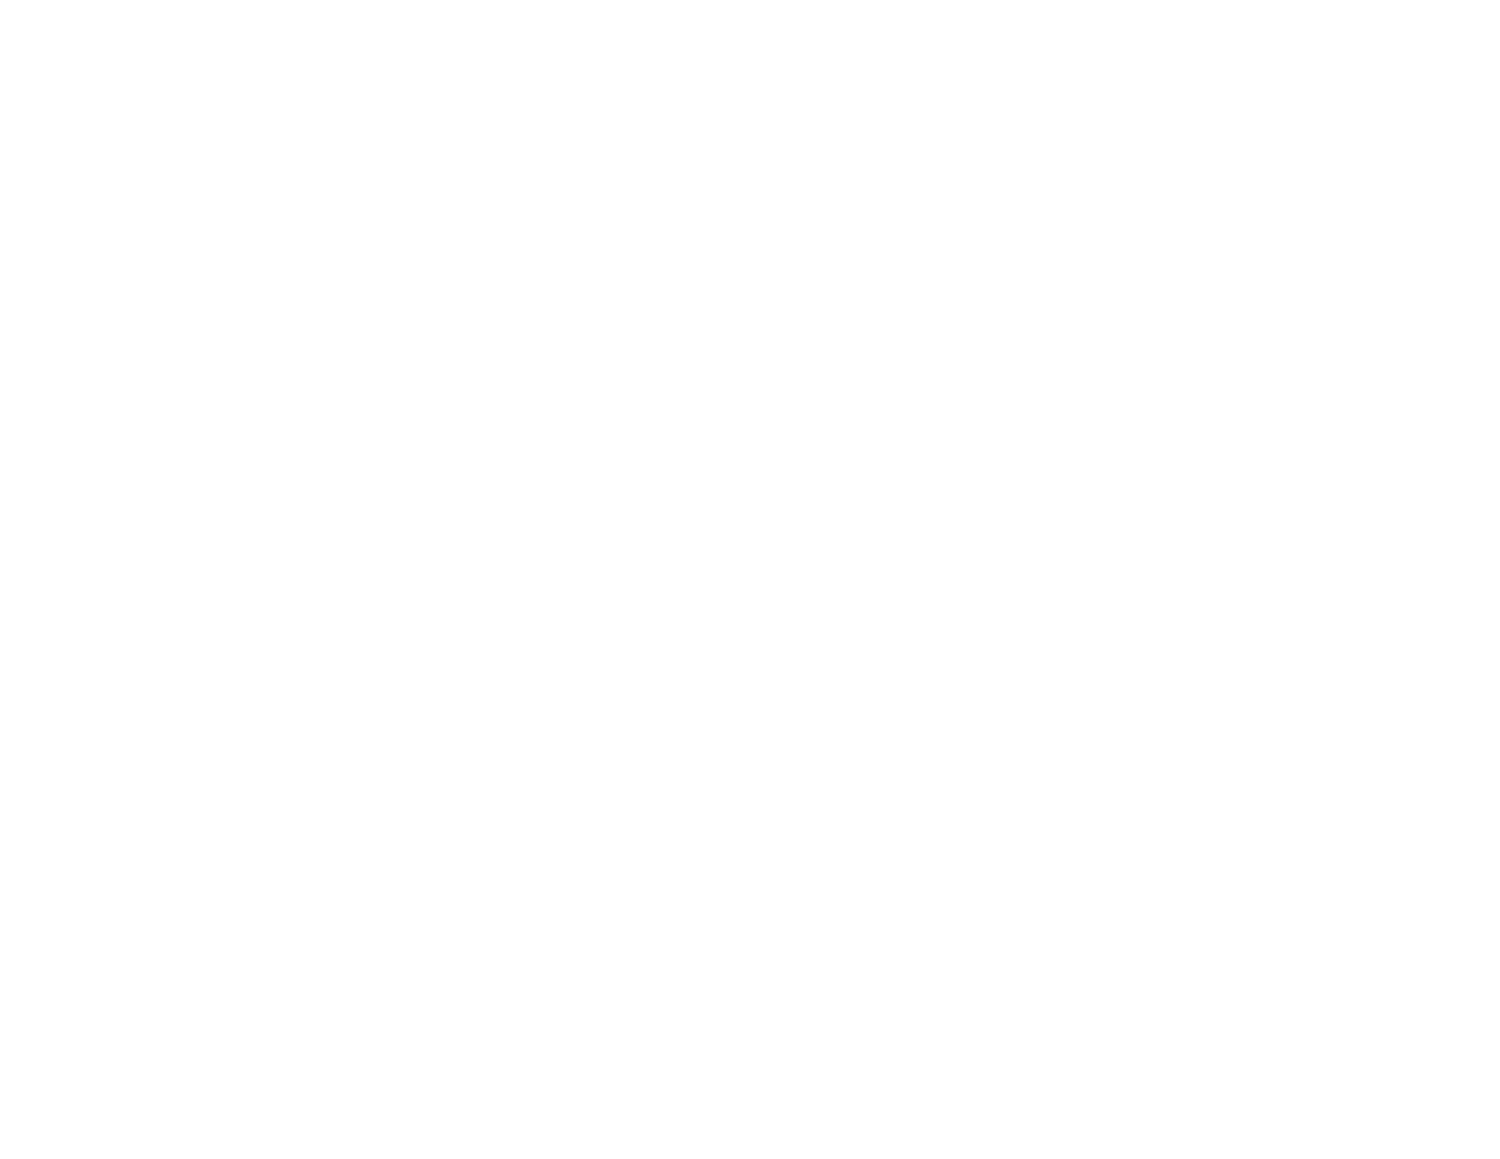 Central Valley Brewfest